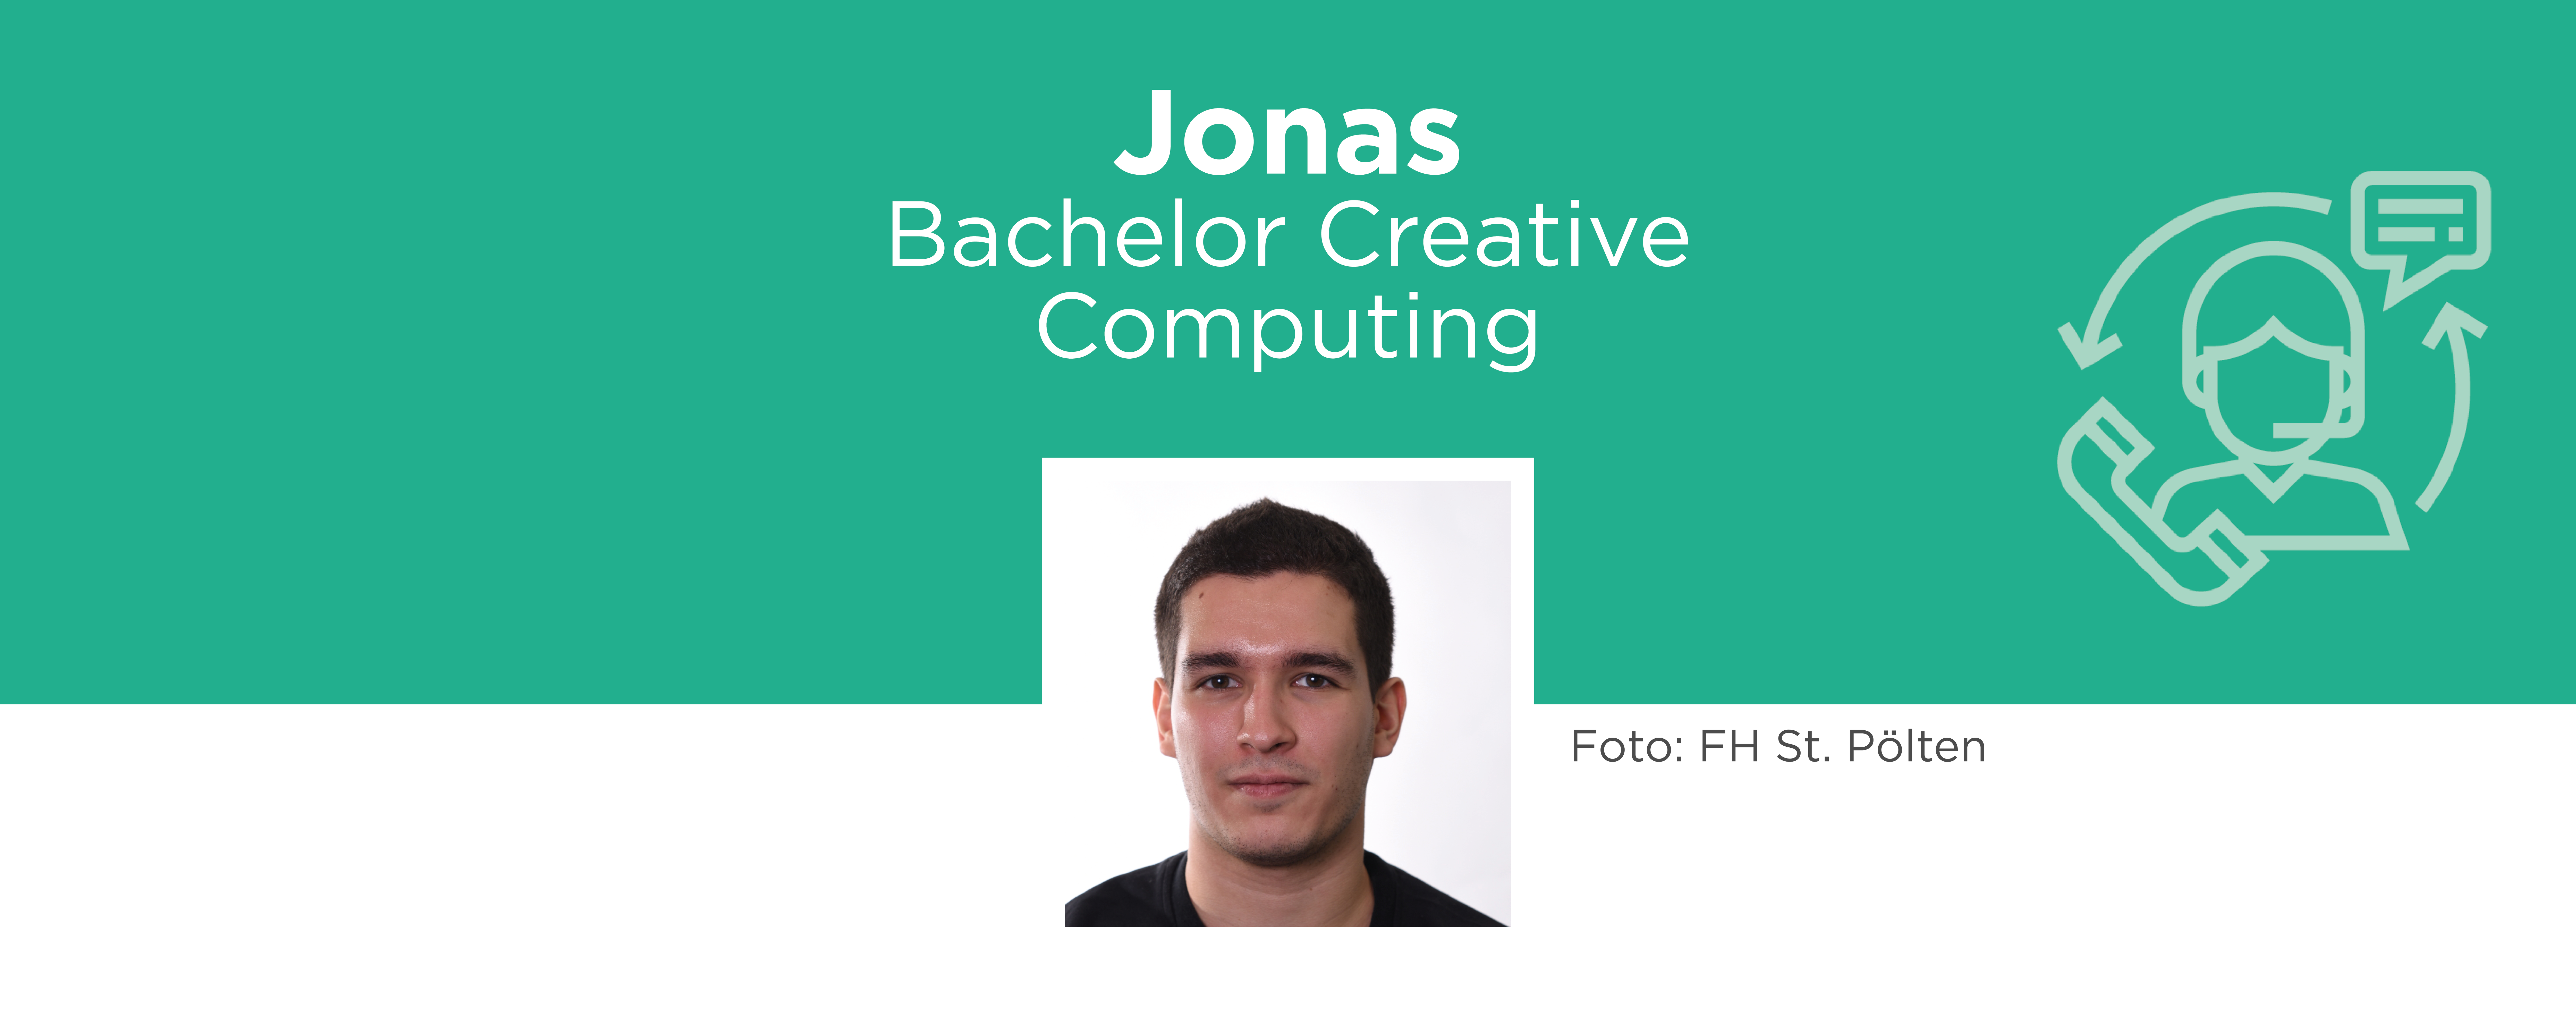 Jonas: Bachelor Creative Computing